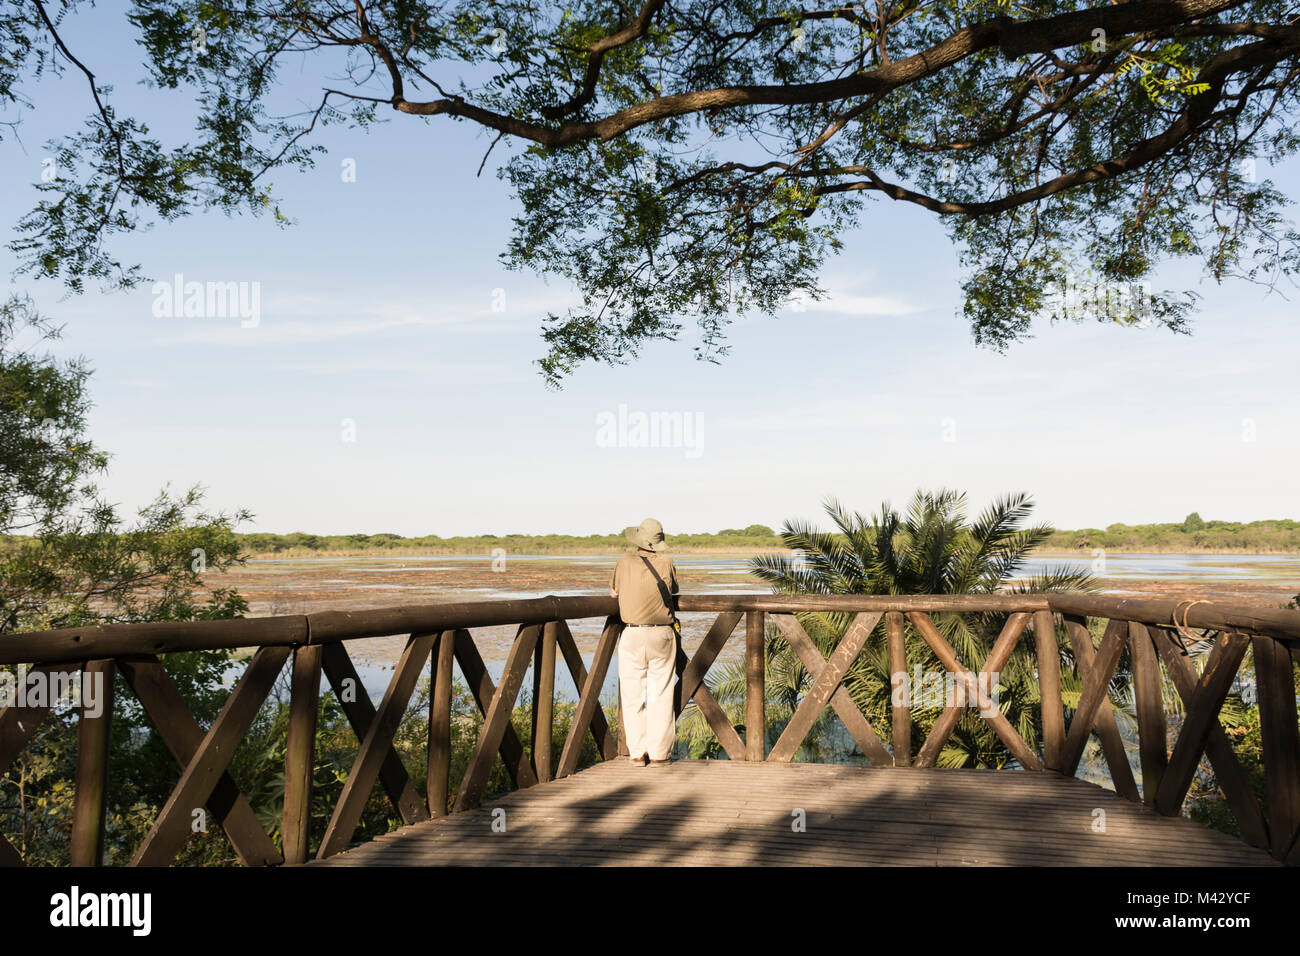 Ein alter Mann mit Blick auf den See, Buenos Aires Costanera Sur Ecological Reserve, Argentinien Stockfoto